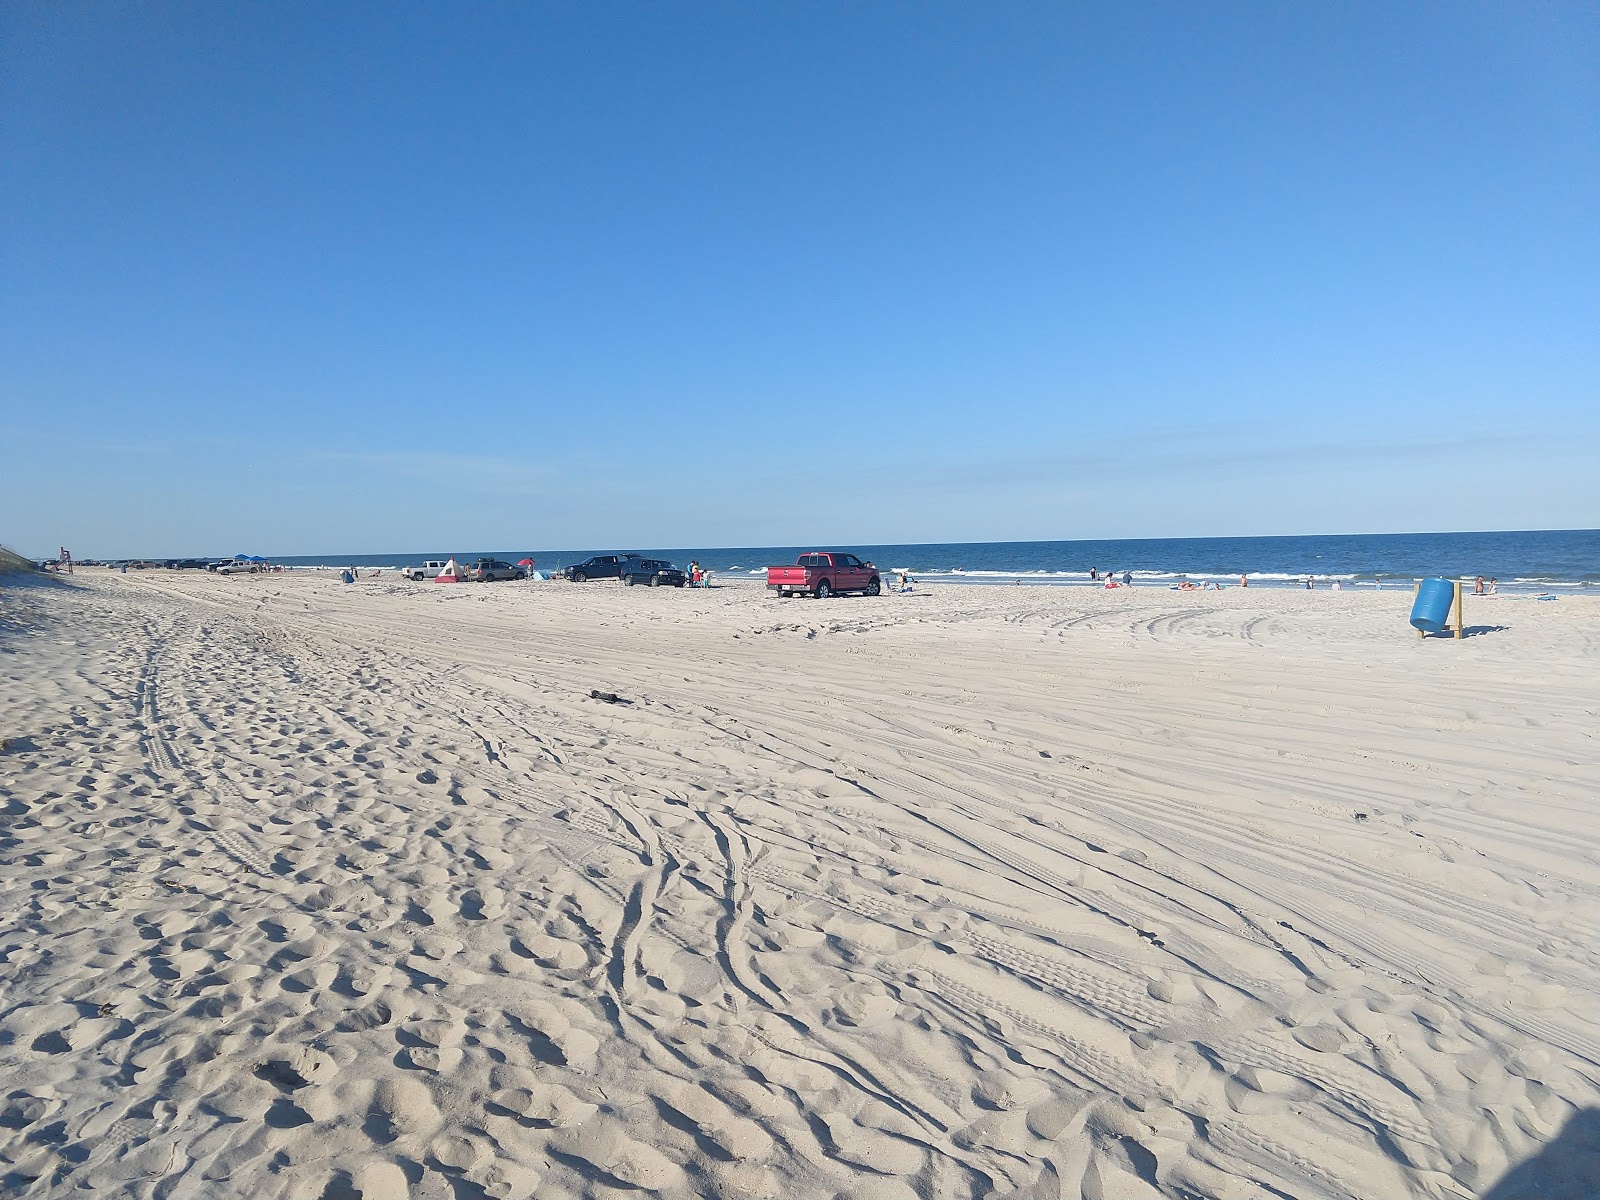 Photo de Peters Point beach - endroit populaire parmi les connaisseurs de la détente